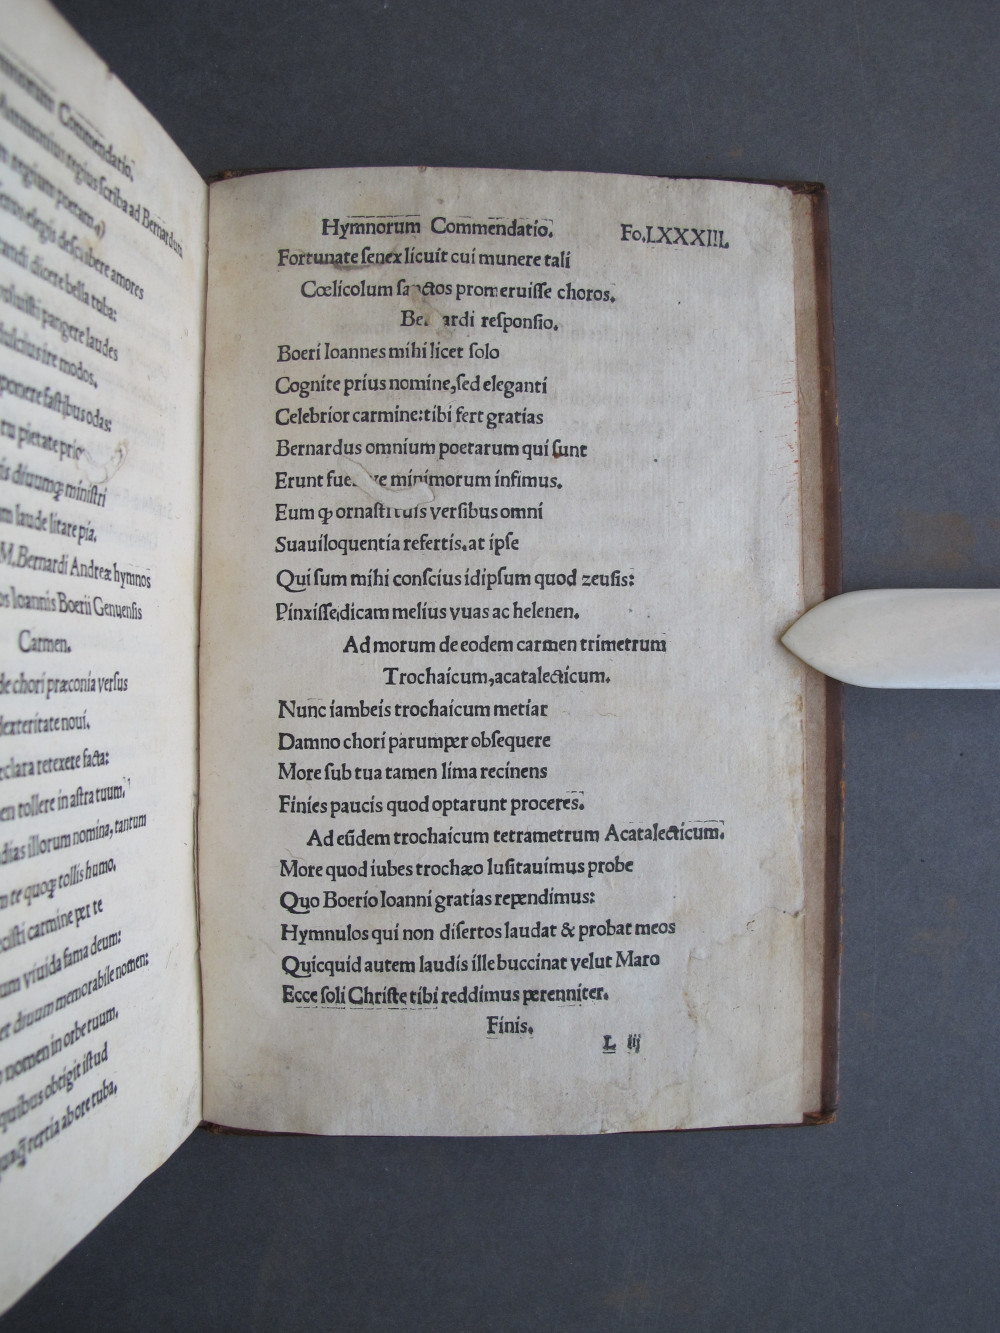 Folio 83 recto